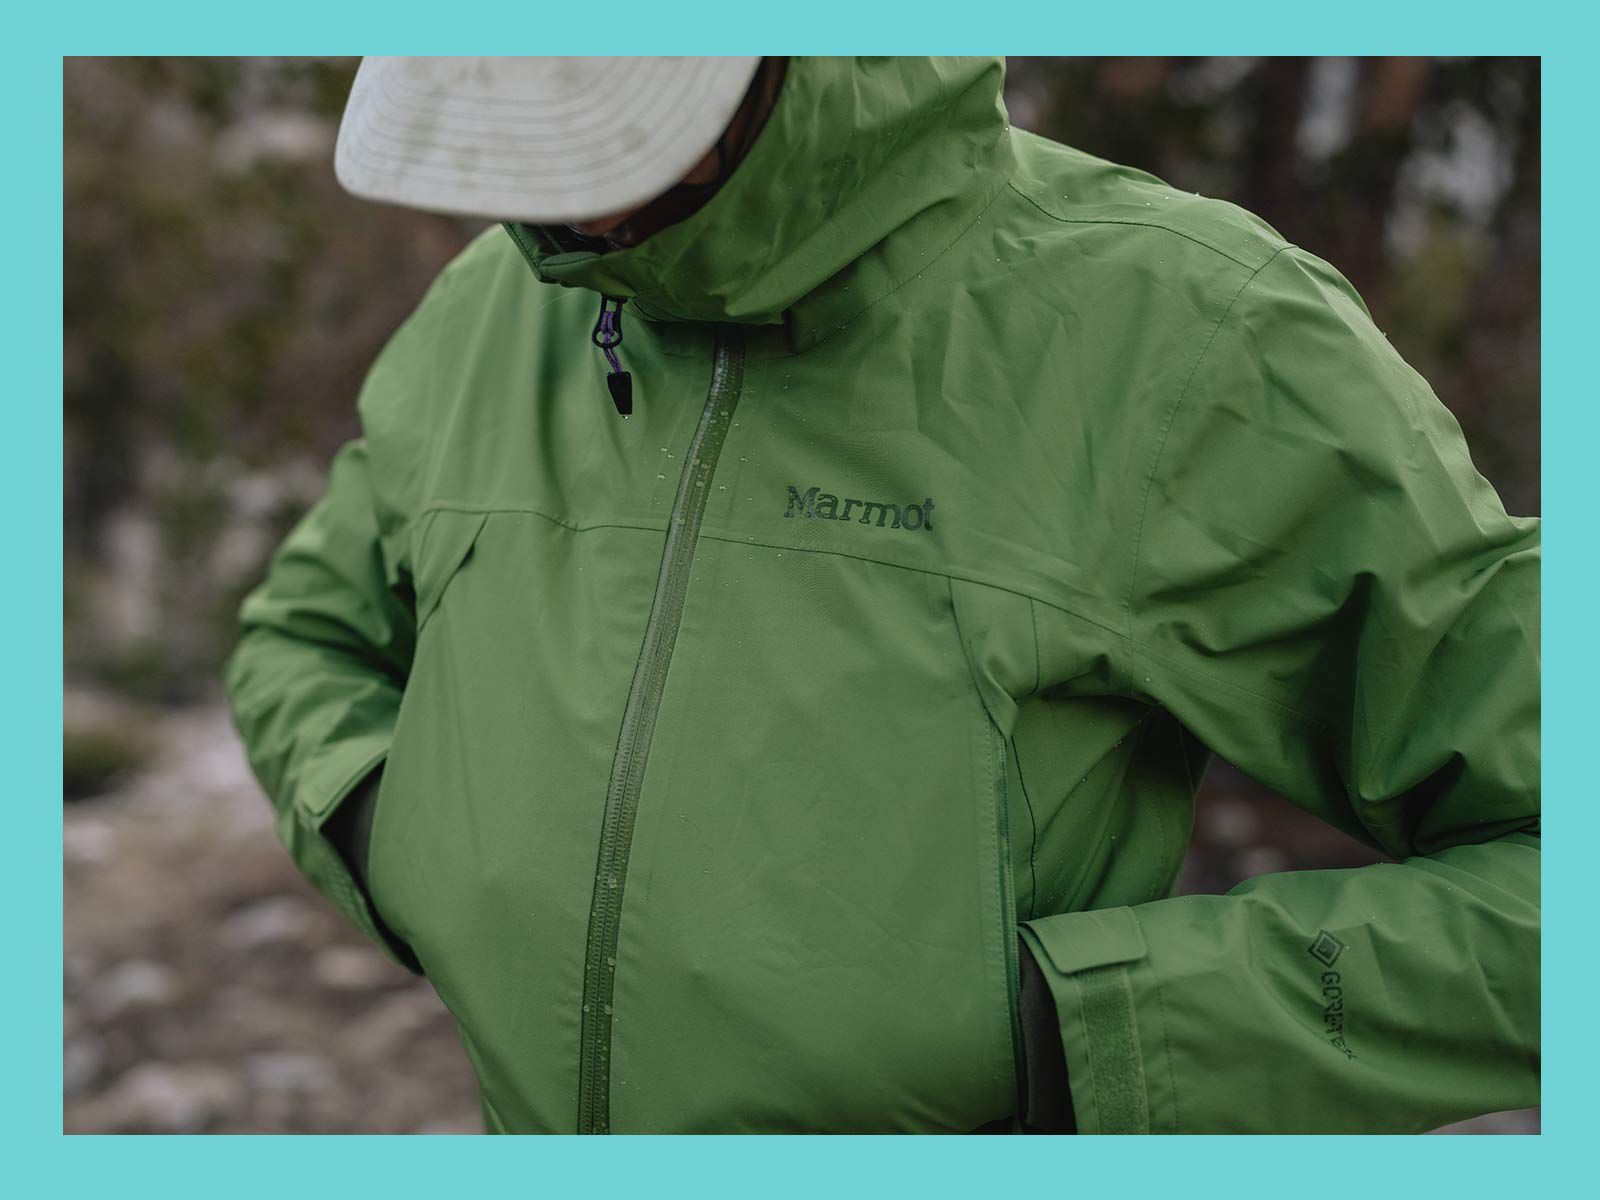 Hiker wearing Marmot green hooded jacket